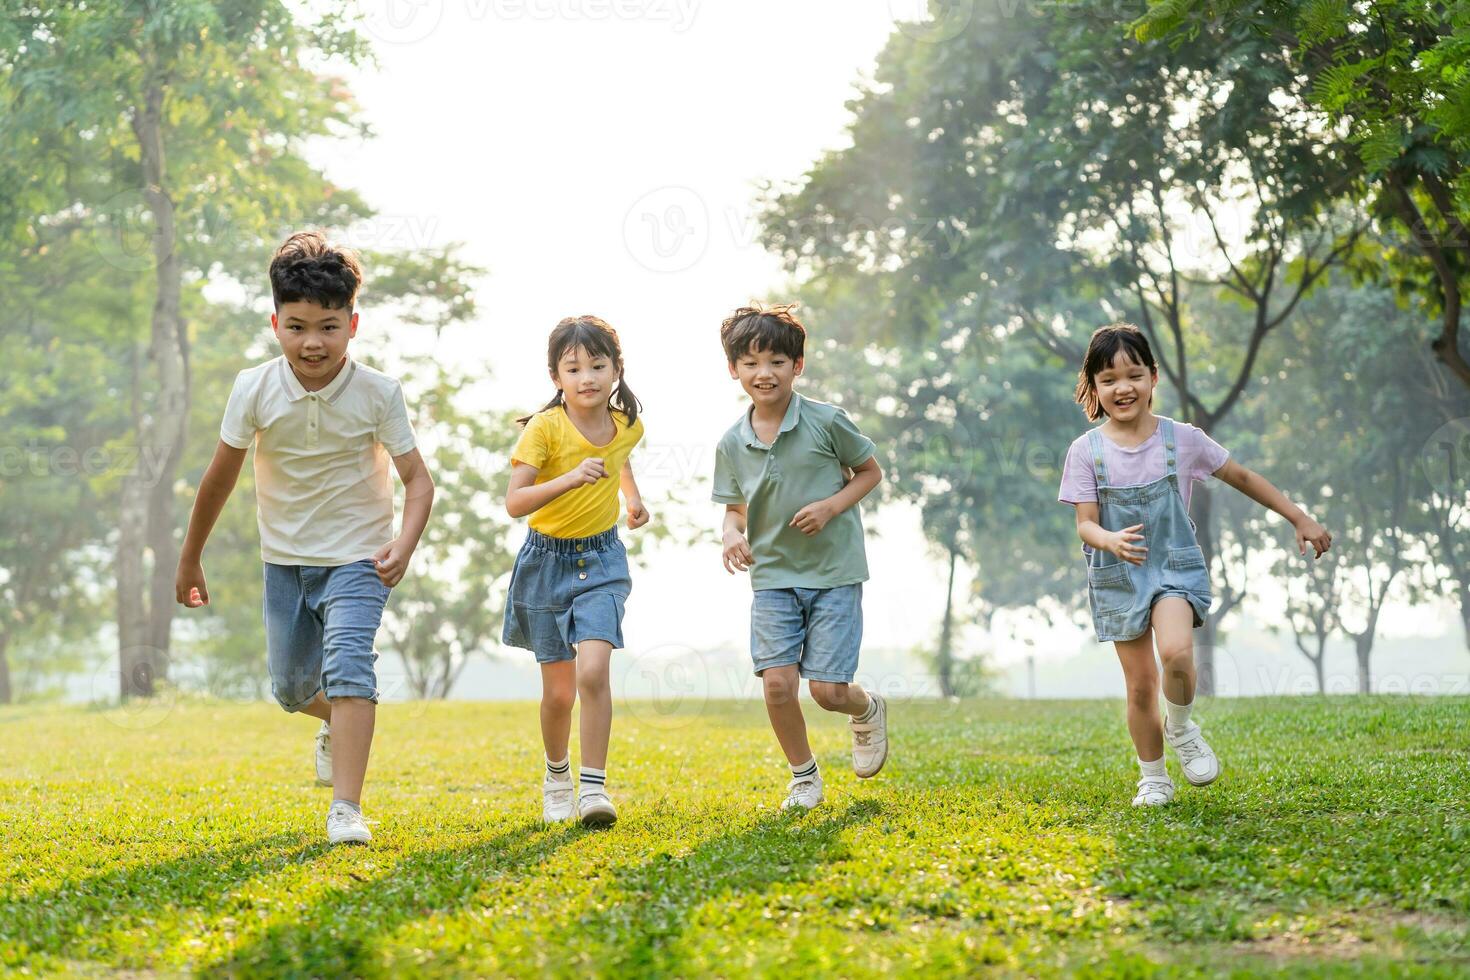 groep beeld van Aziatisch kinderen hebben pret in de park foto